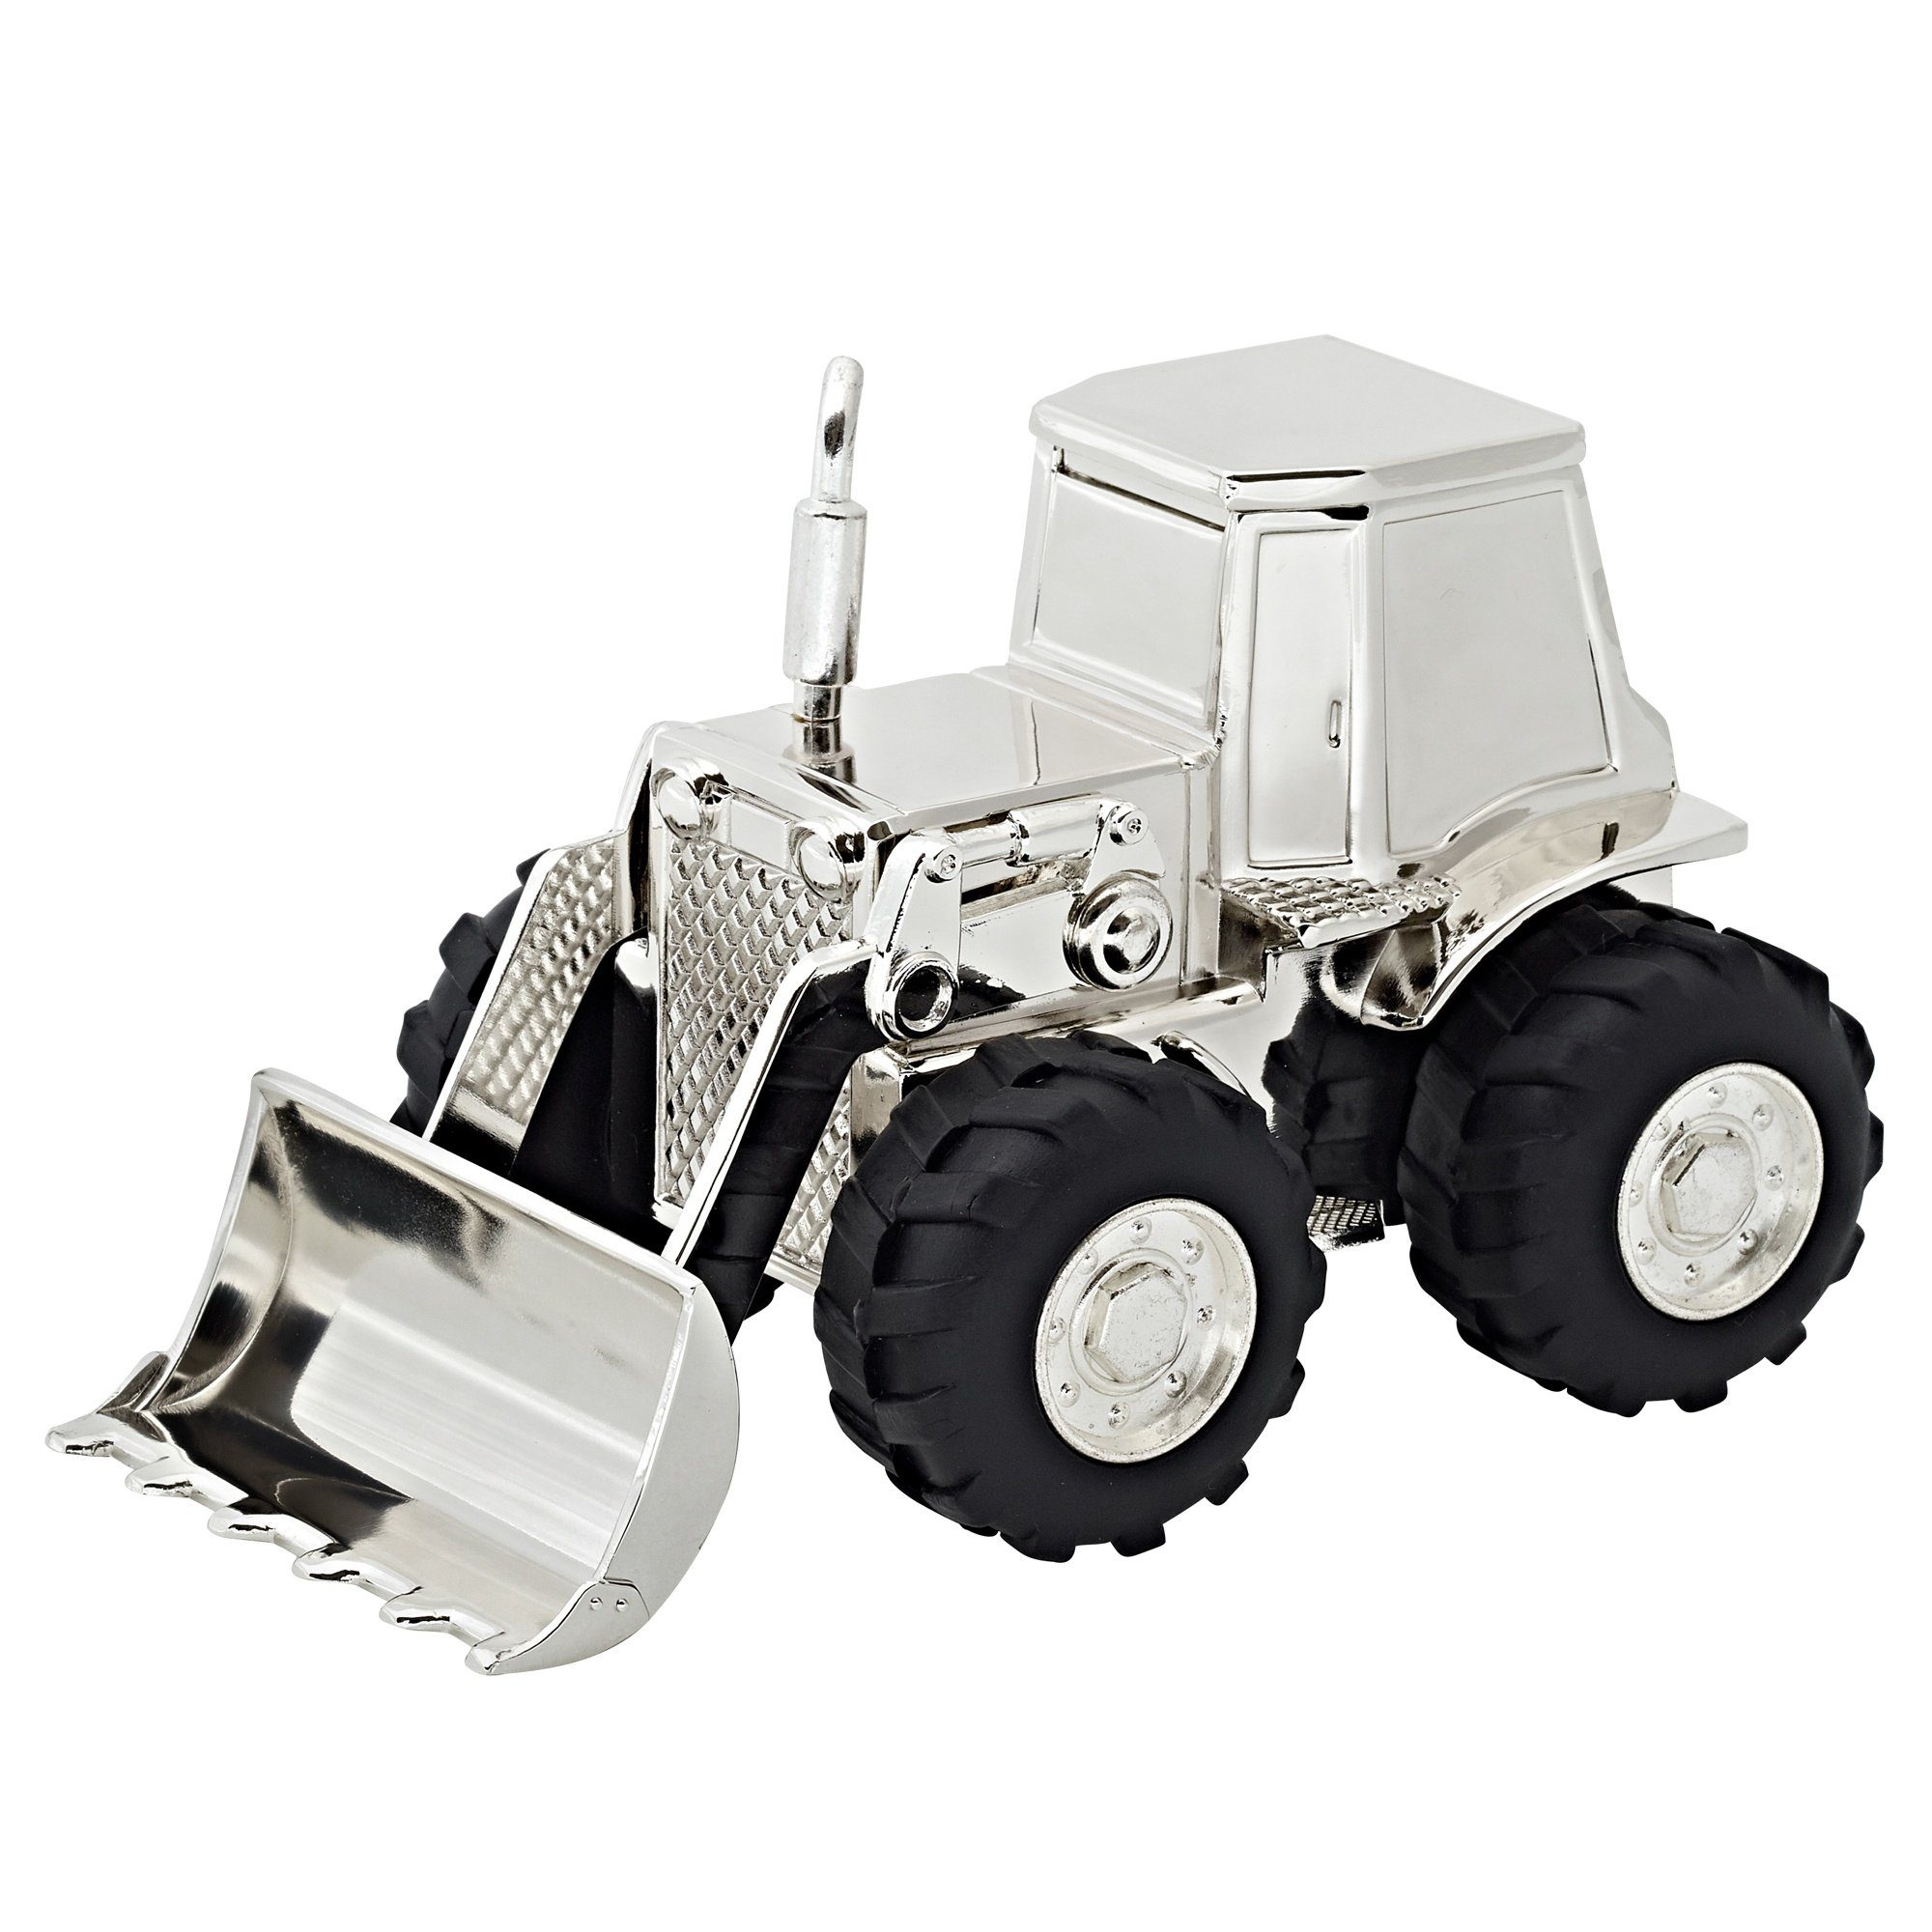 EDZARD Spardose Traktor, versilberte Sparbüchse mit Anlaufschutz, Sparschwein im modernen Design, ideal als Geschenk, Höhe 9 cm